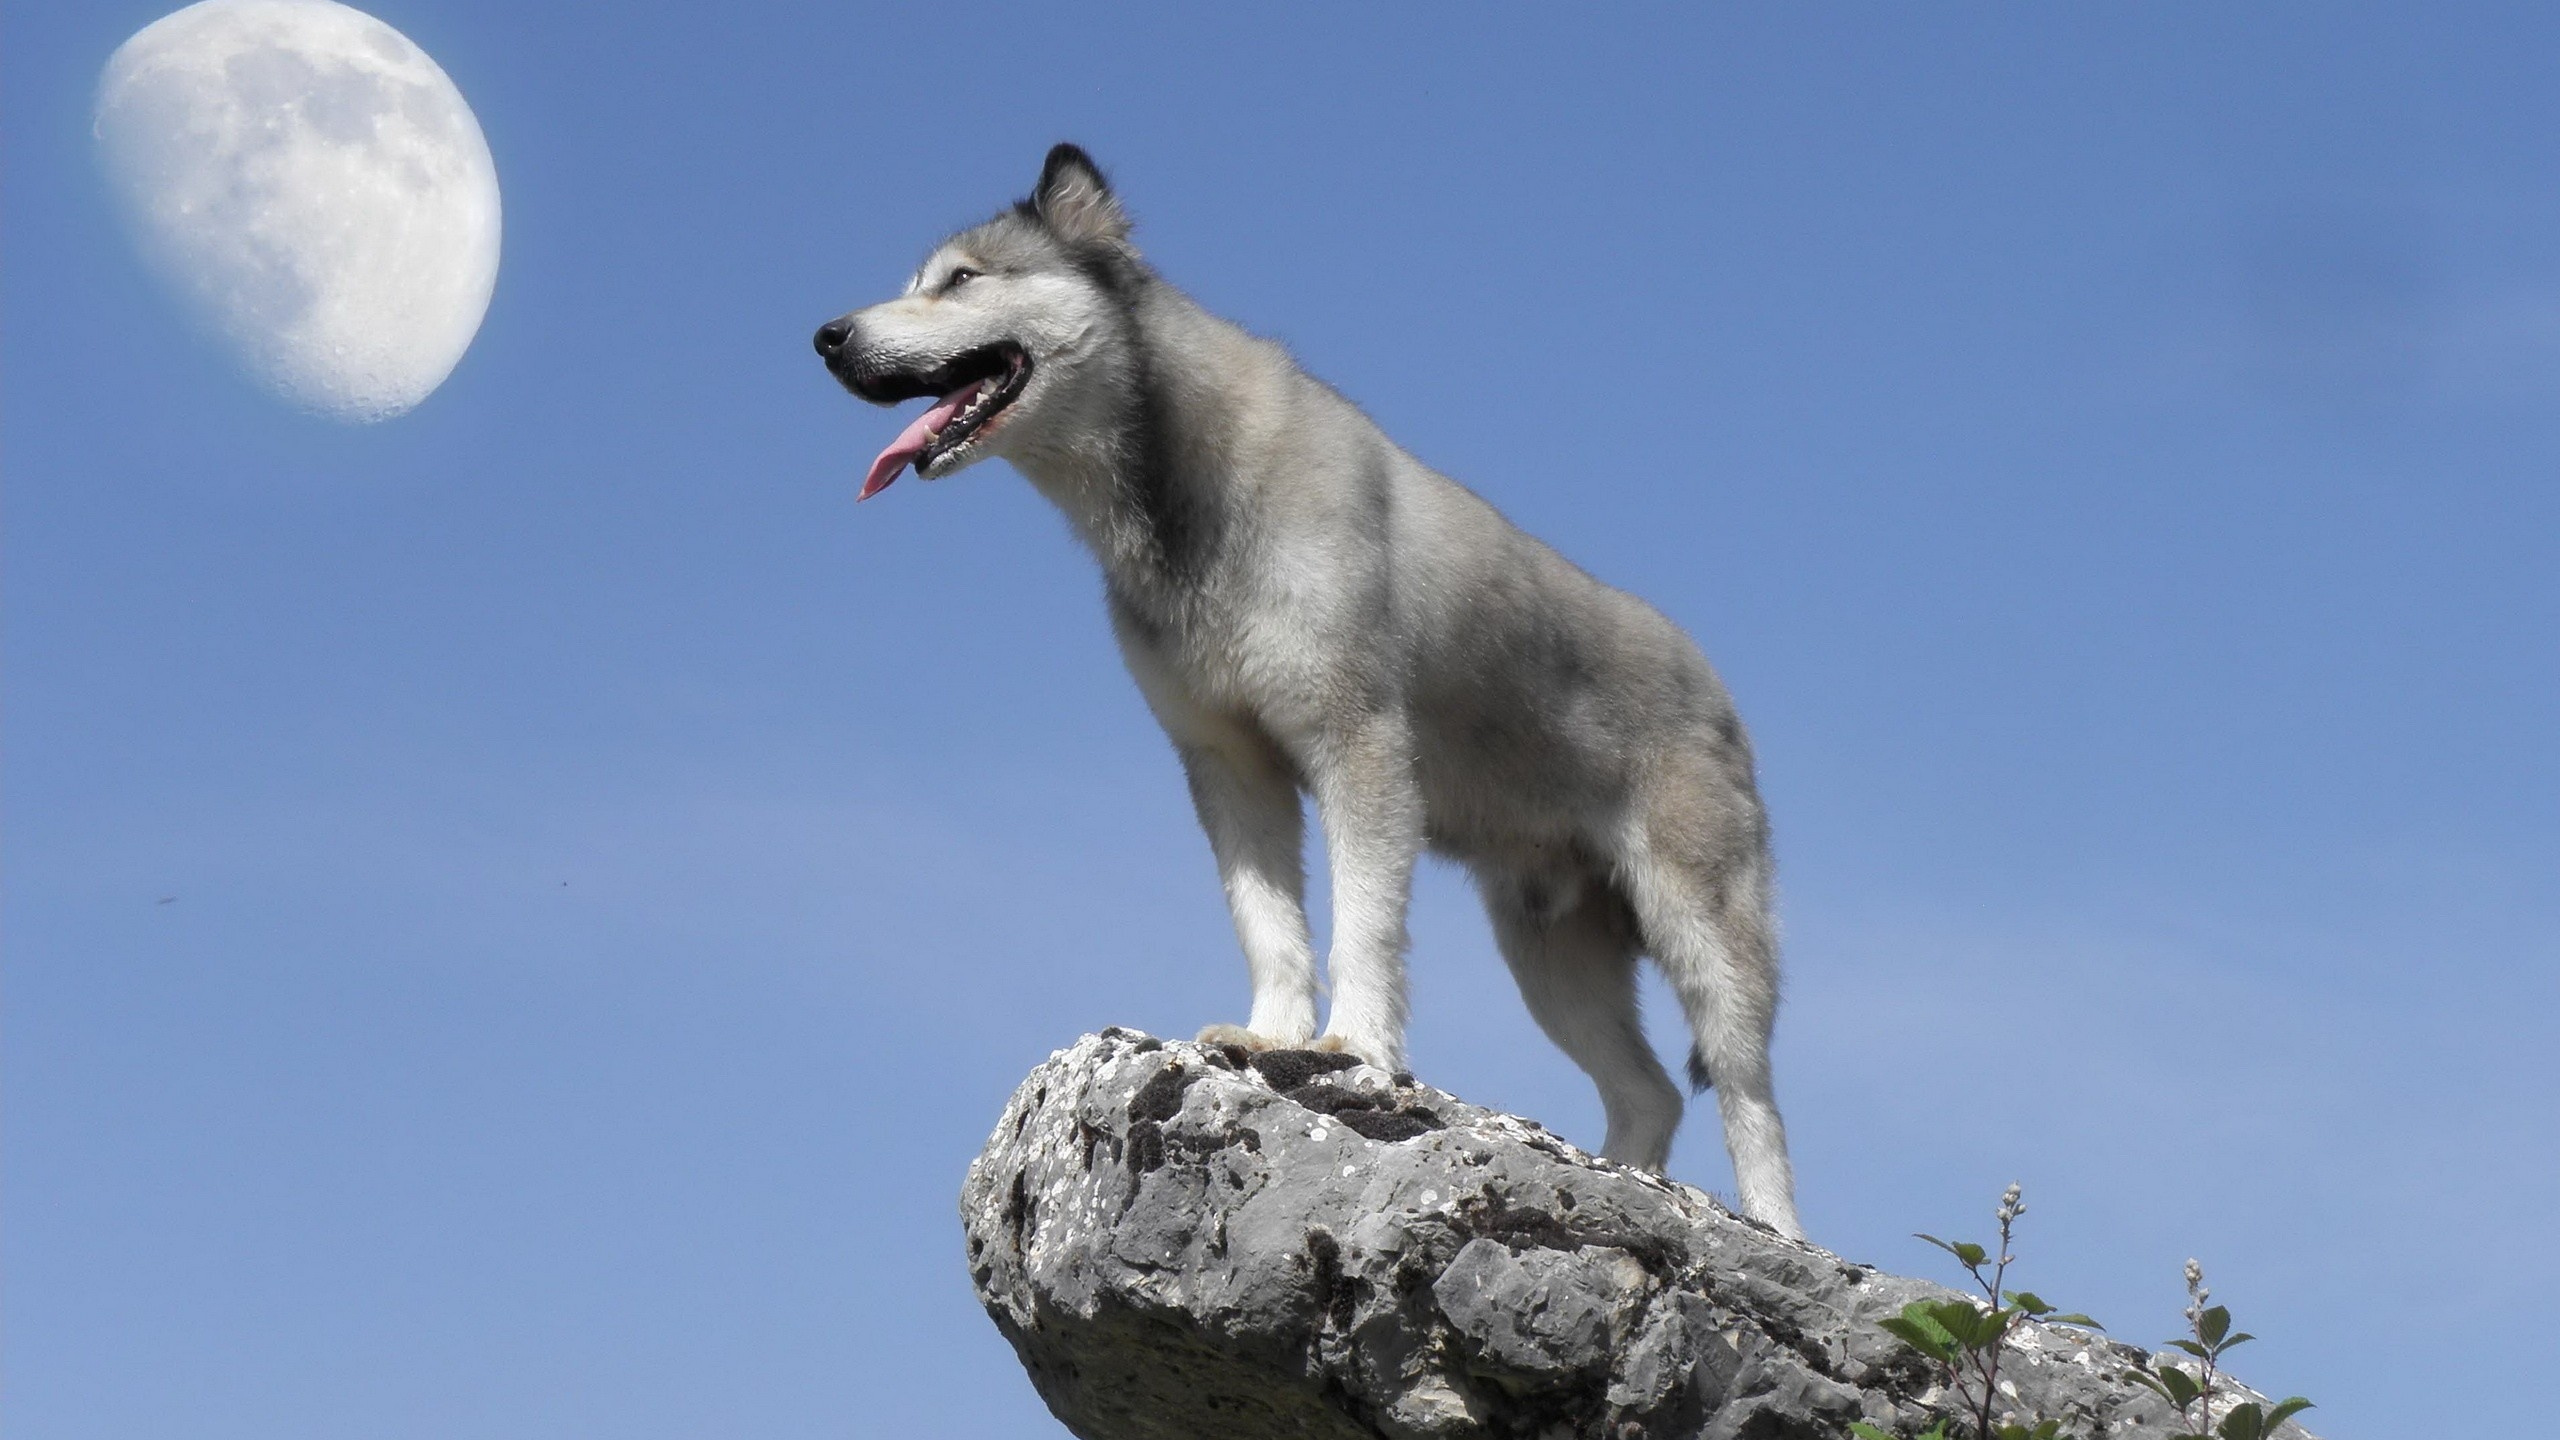 萨哈林赫斯基, 北方的因纽特人的狗, Saarloos那只狼狗, 捷克斯洛伐克那只狼狗, 品种的狗 壁纸 2560x1440 允许